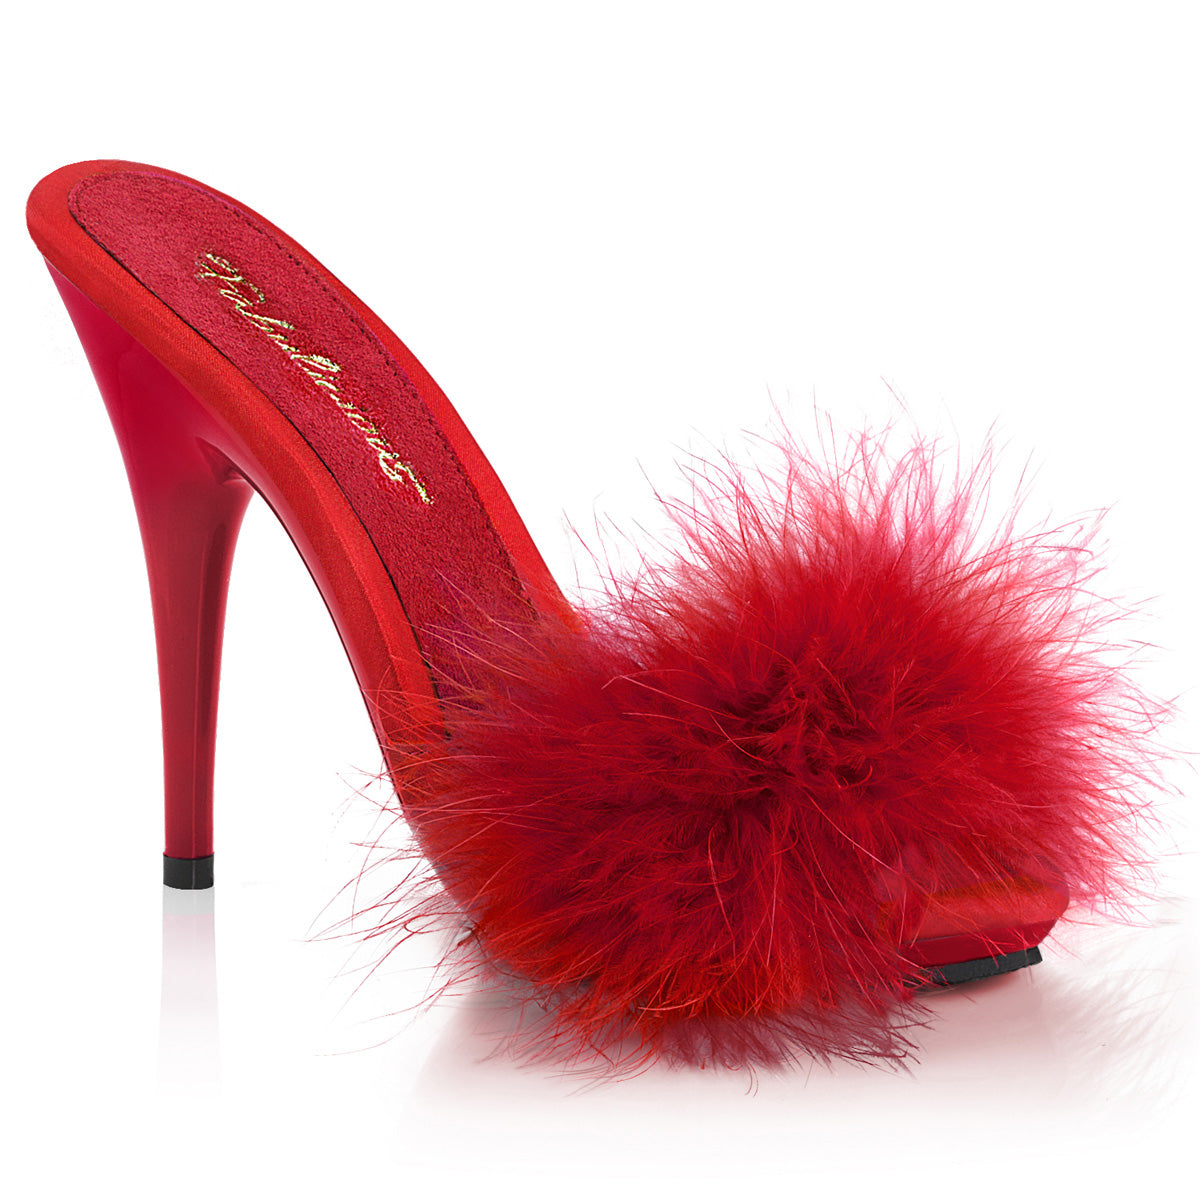 5 Inch (127mm) Heel, 3/8 Inch (10mm) Platform Red Satin Marabou Fur Sandal